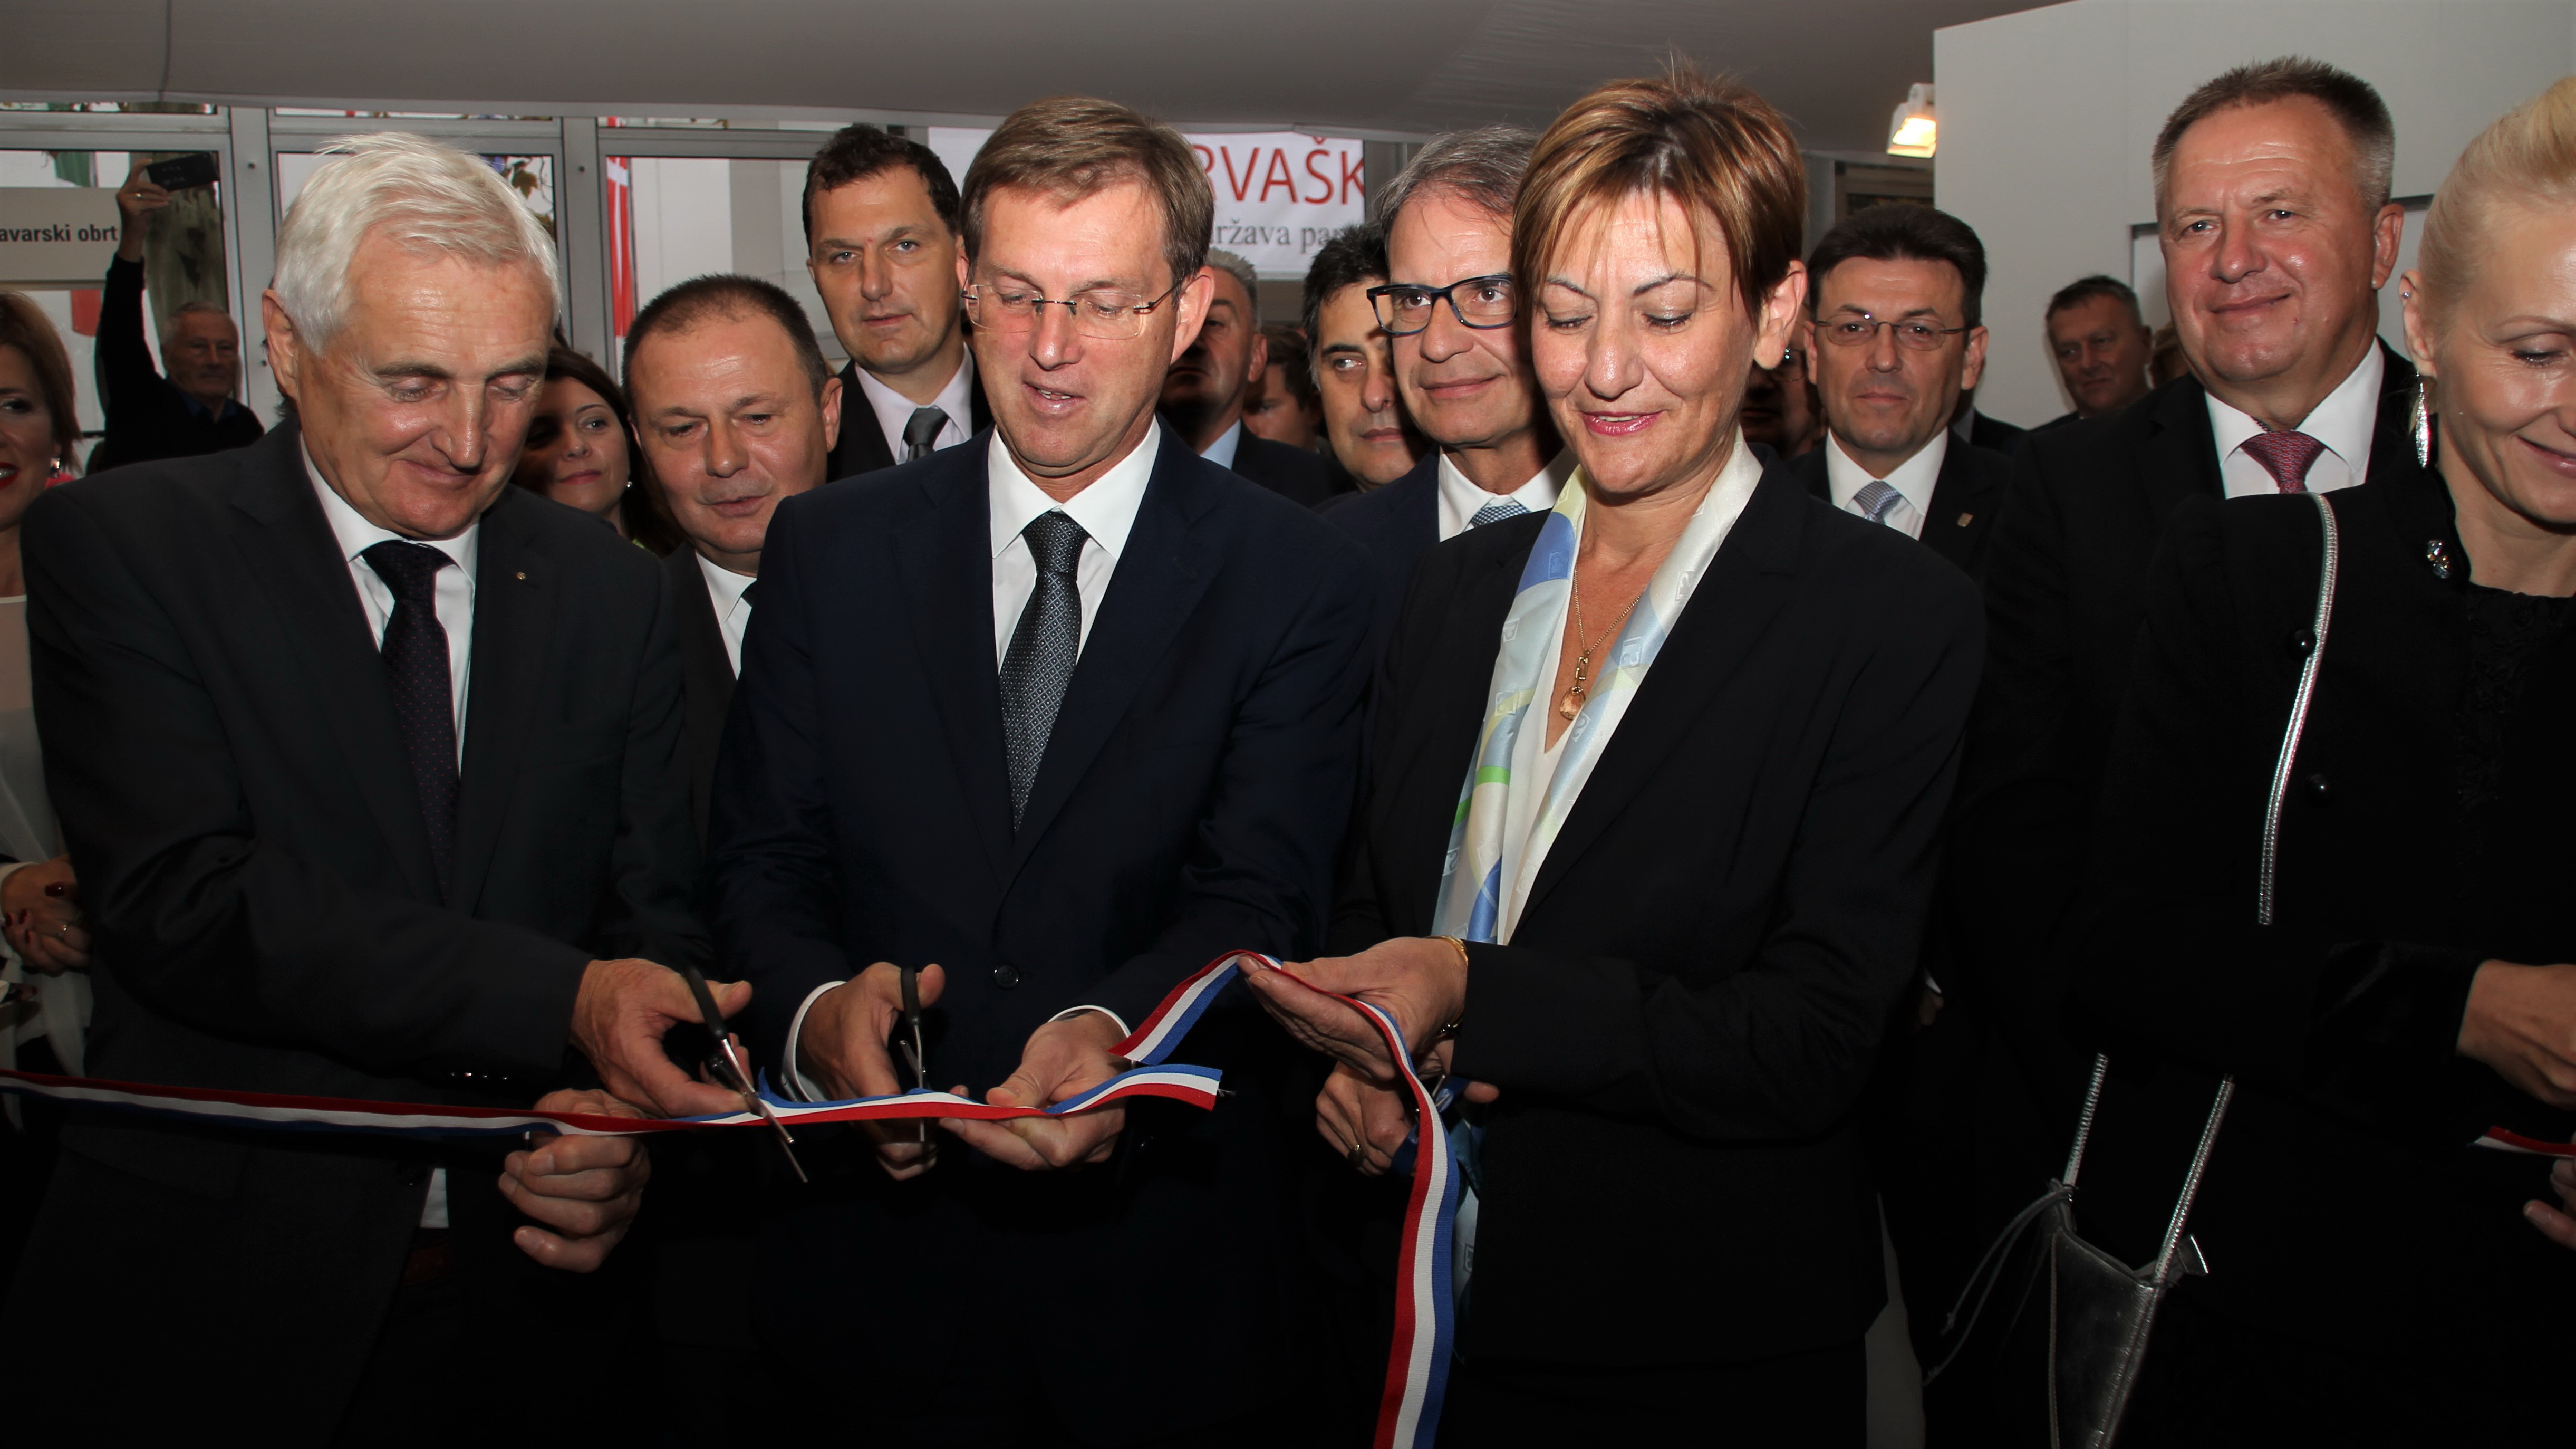 Unatoč otvorenim političkim pitanjima, gospodarska suradnja sa Slovenijom sve jača